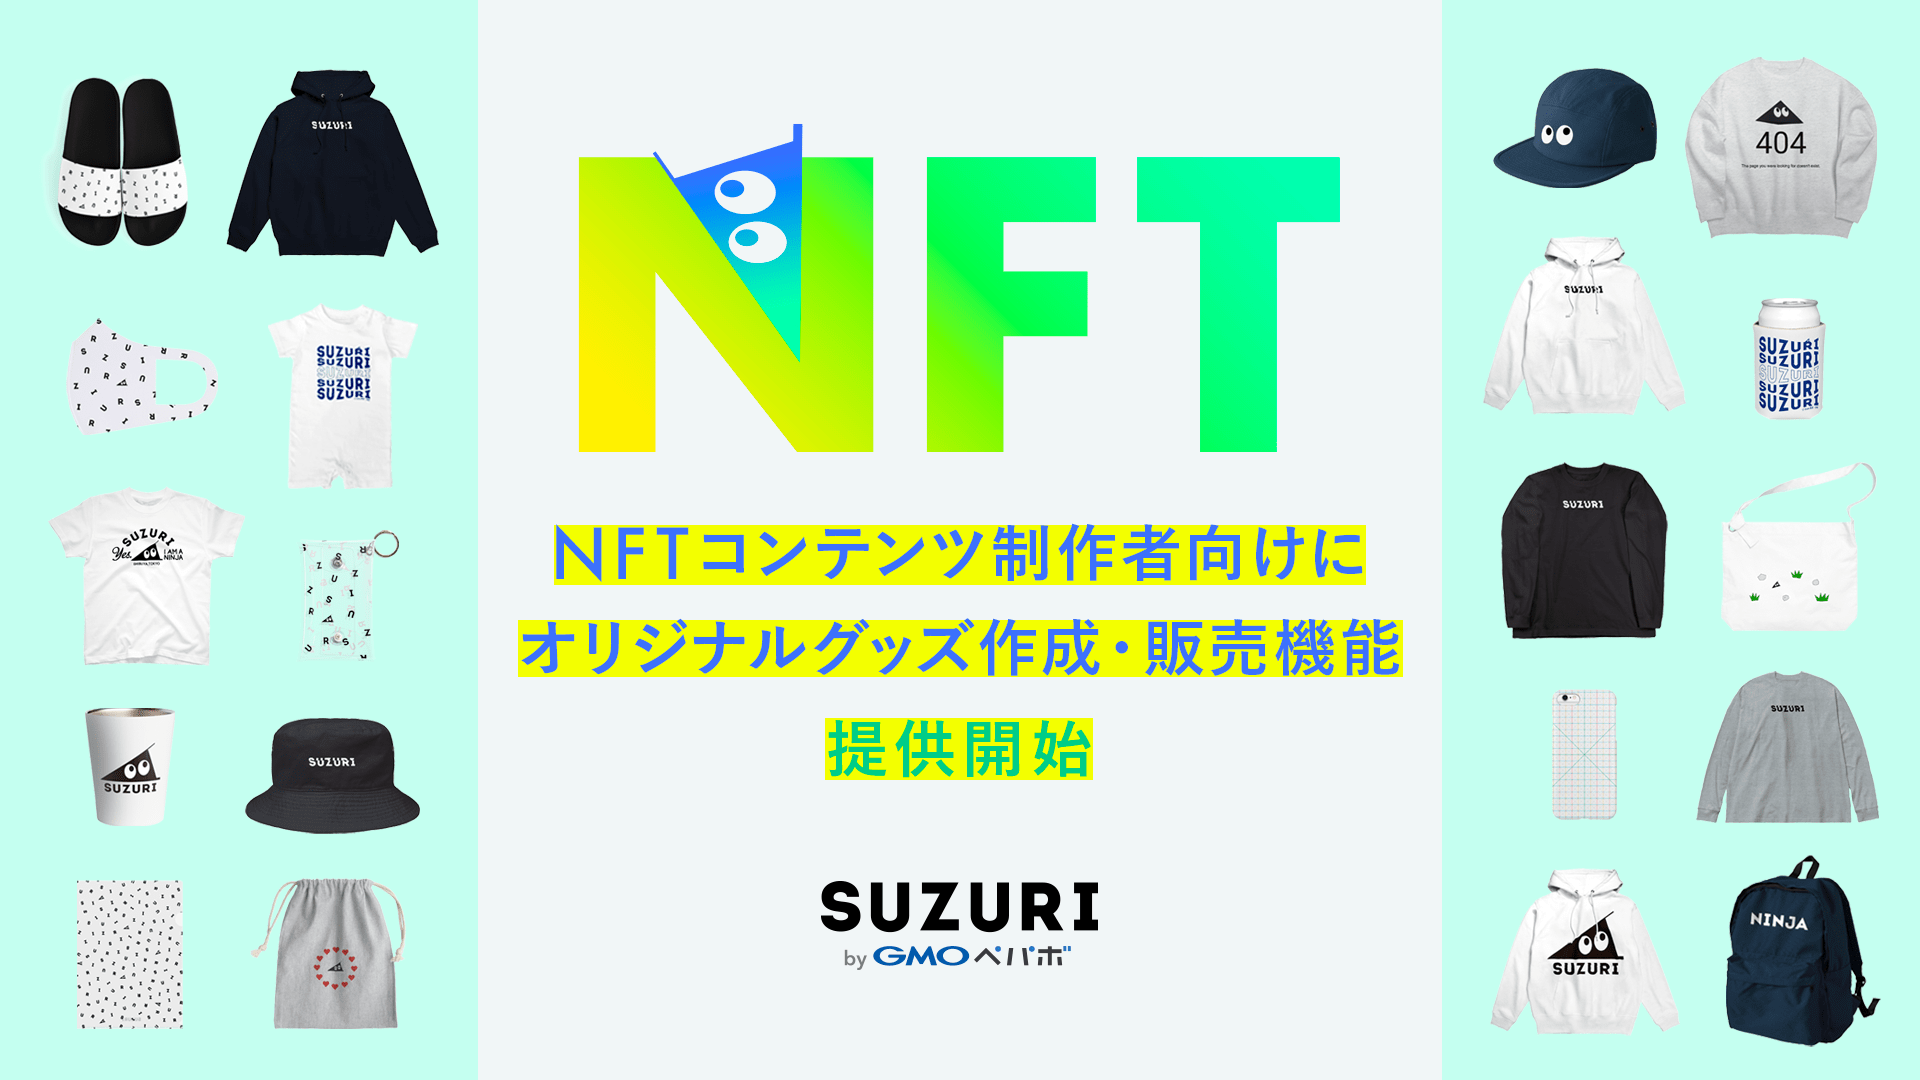 「SUZURI byGMOペパボ」、NFTコンテンツ制作者向けにオリジナルグッズ作成・販売機能 提供開始